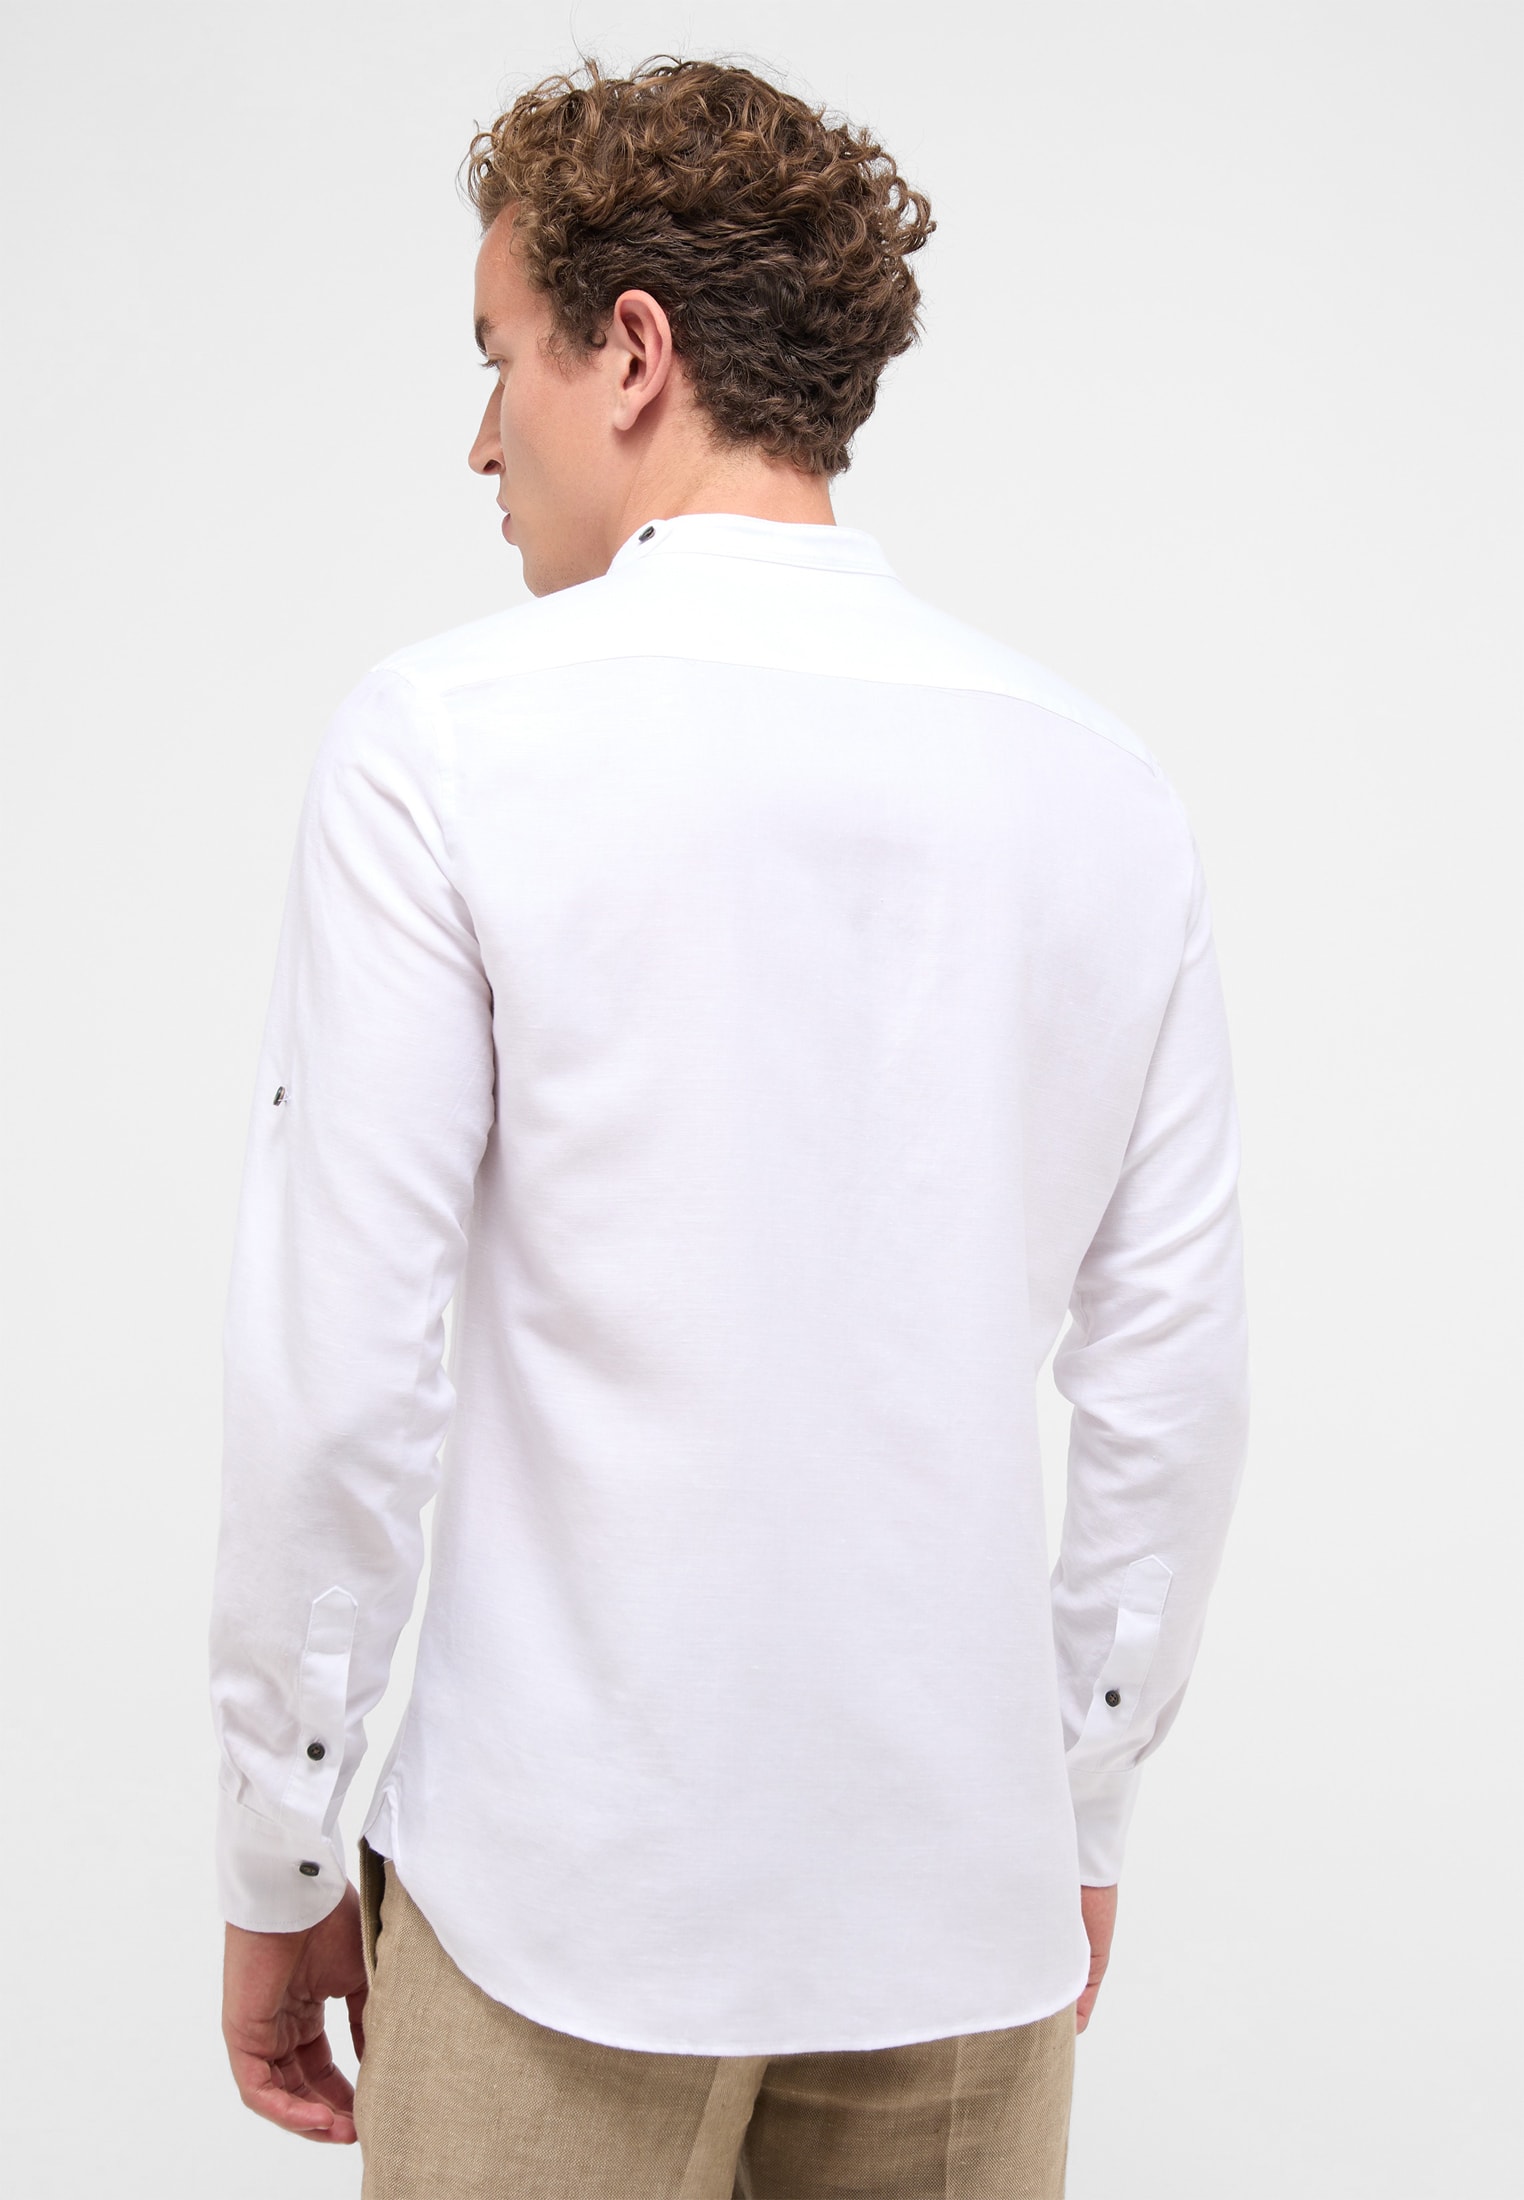 SLIM FIT Linen Shirt in weiß unifarben | weiß | 40 | Langarm |  1SH12593-00-01-40-1/1